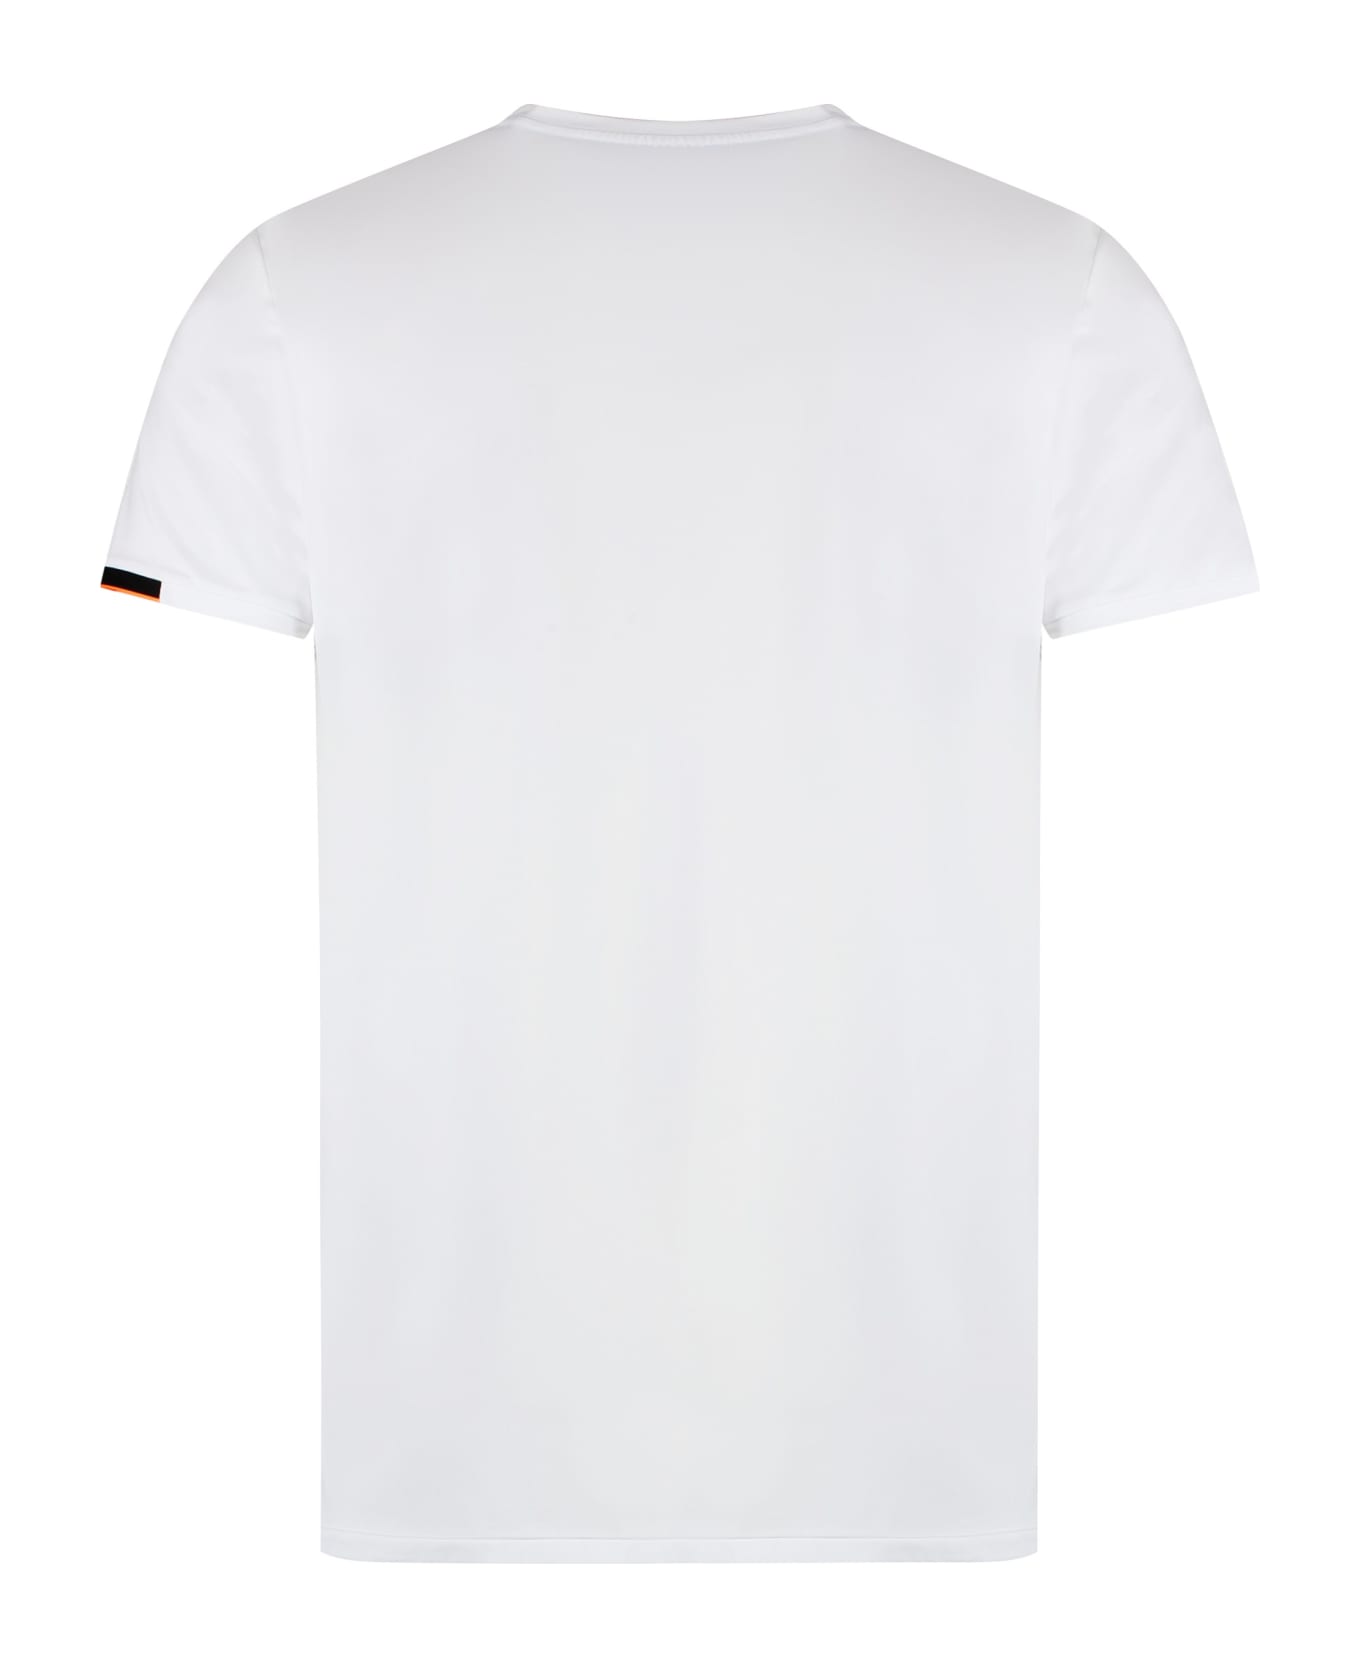 RRD - Roberto Ricci Design Oxford Techno Fabric T-shirt - Bianco シャツ